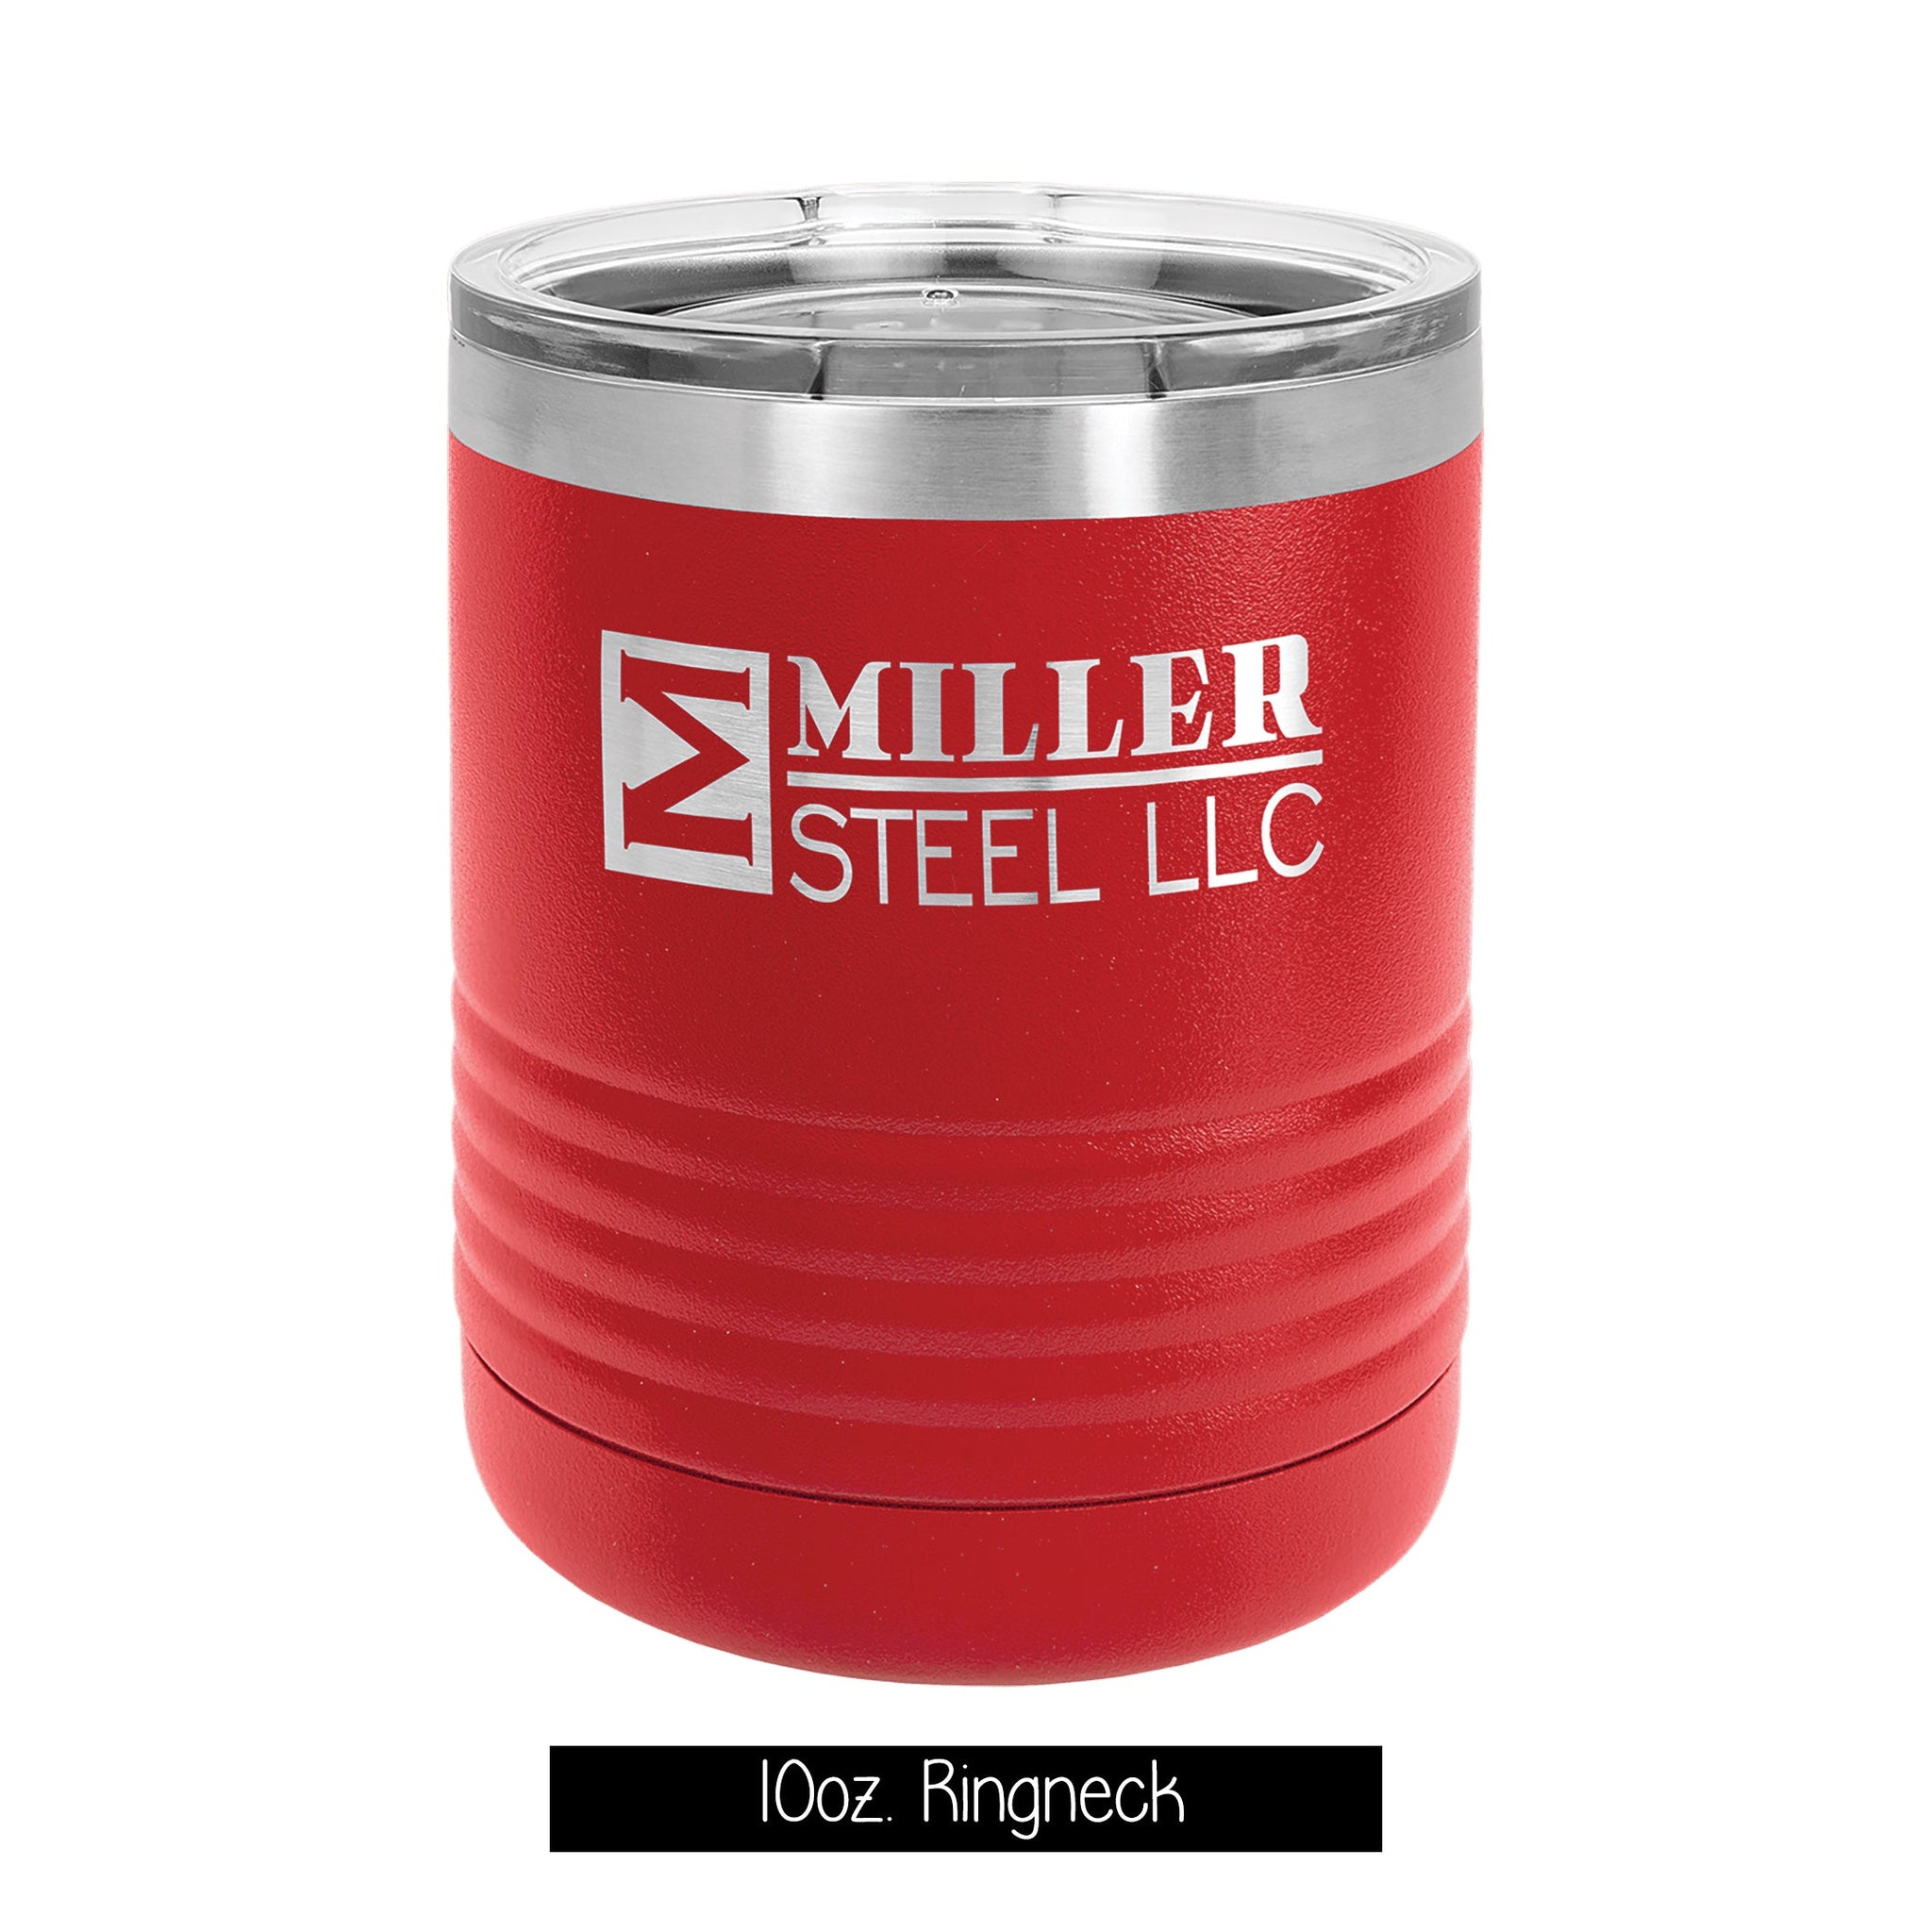 10oz Stainless Steel Short Tumbler